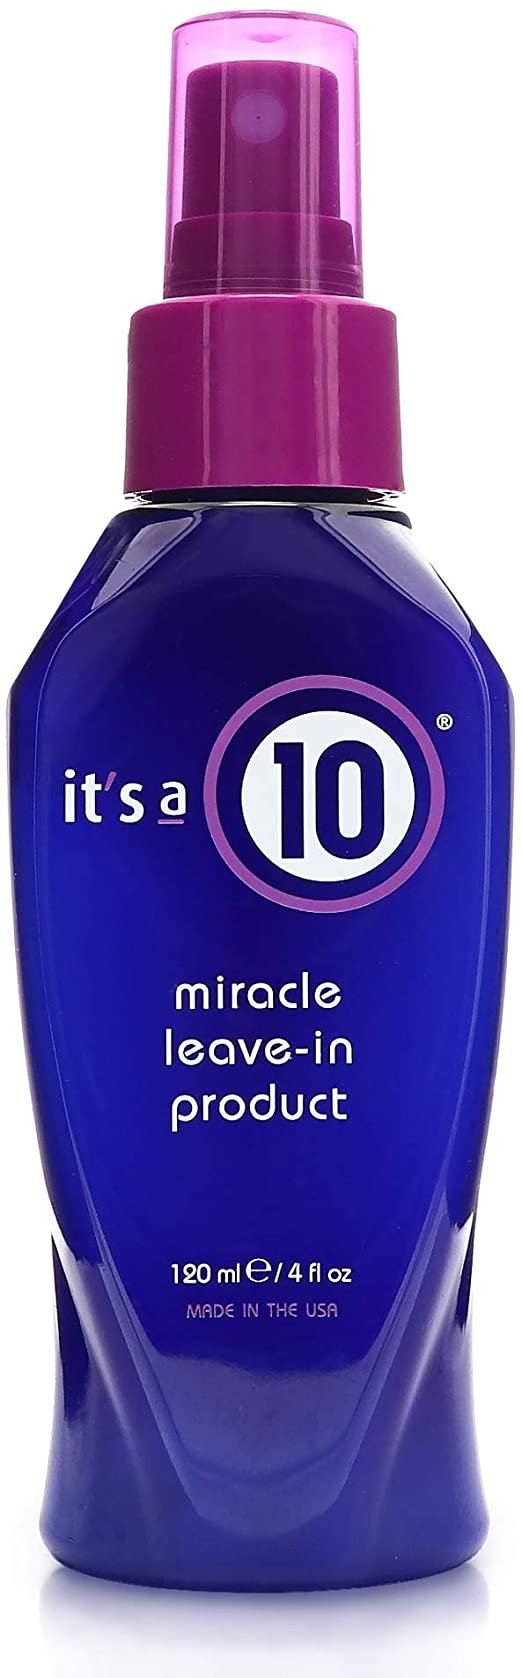 这是10份护发奇迹免洗产品，共4液。盎司